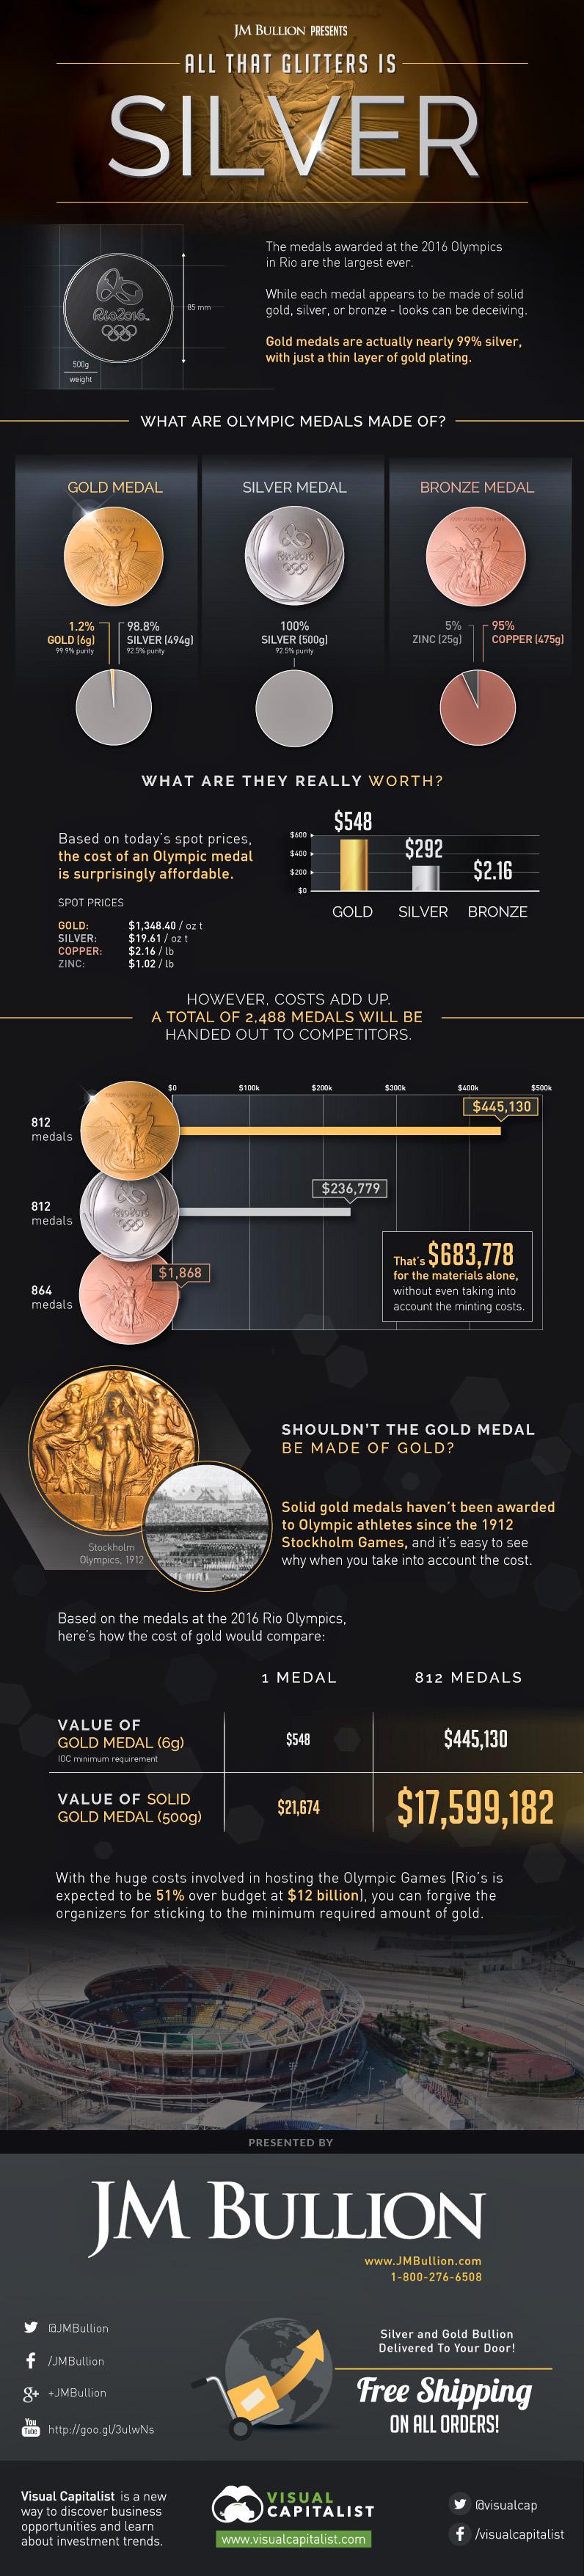 olympic-medals-metal.jpg